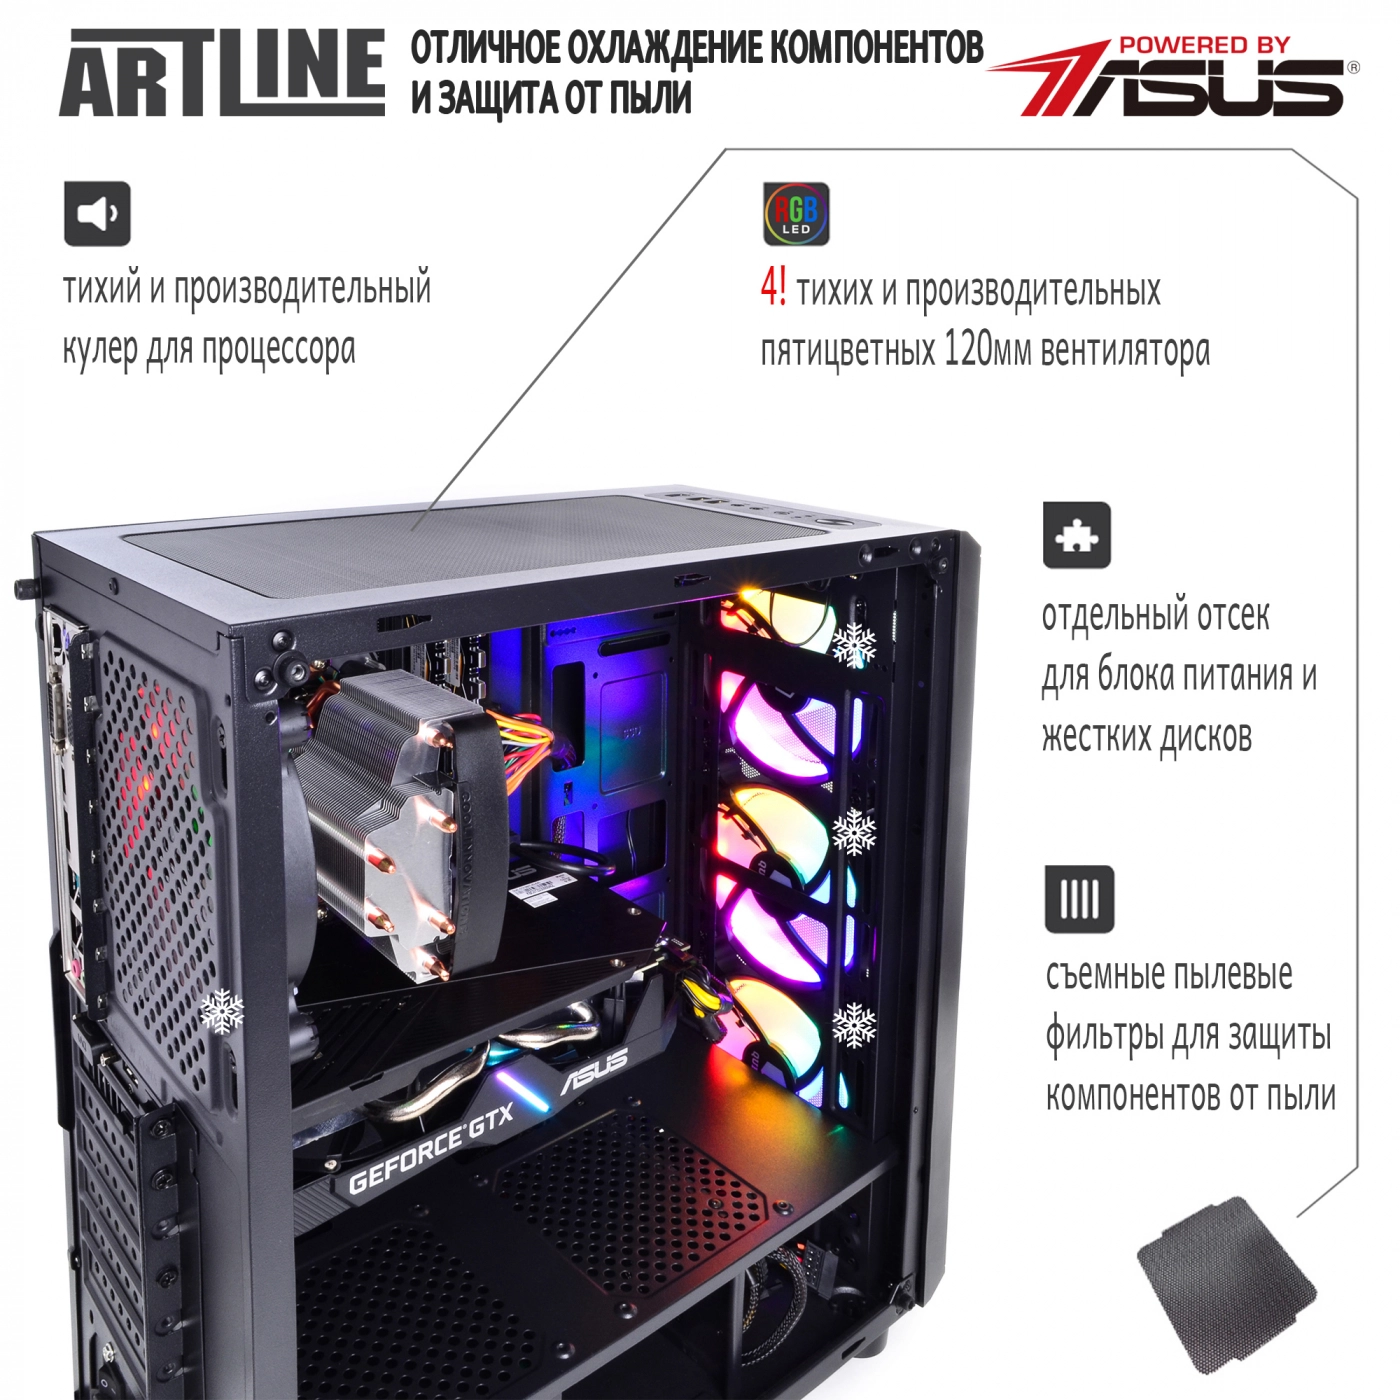 Купить Компьютер ARTLINE Gaming X35v30 - фото 3